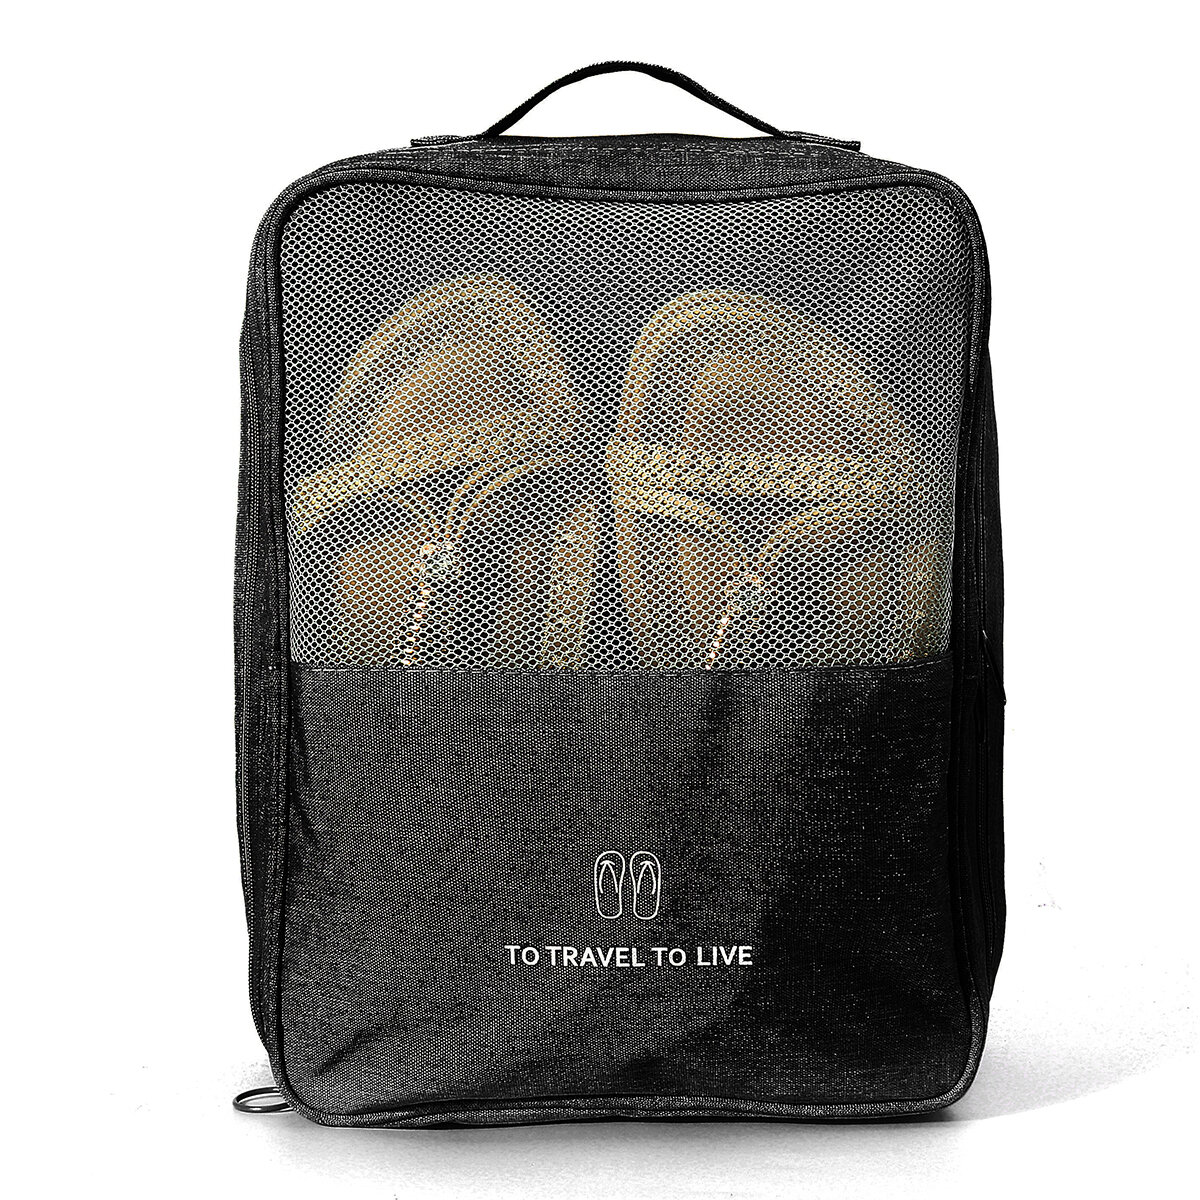 Ταξιδιωτική τσάντα παπουτσιών Τσάντα πλυσίματος Αδιάβροχη περιβαλλοντική οργανική τσάντα αποθήκευσης 